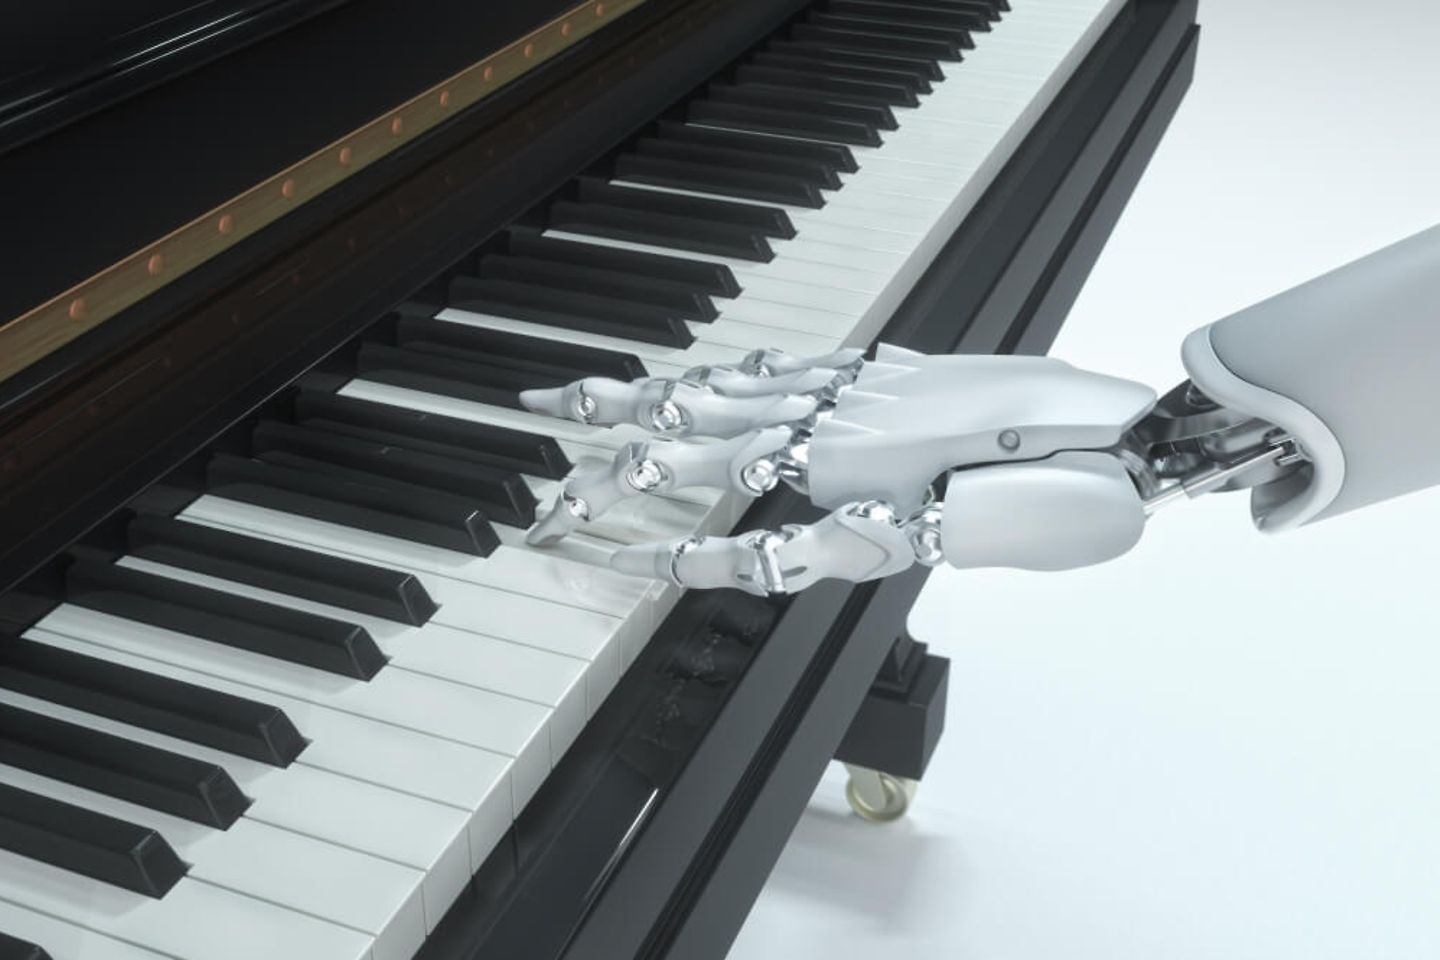 Mão de um robô no teclado de um piano